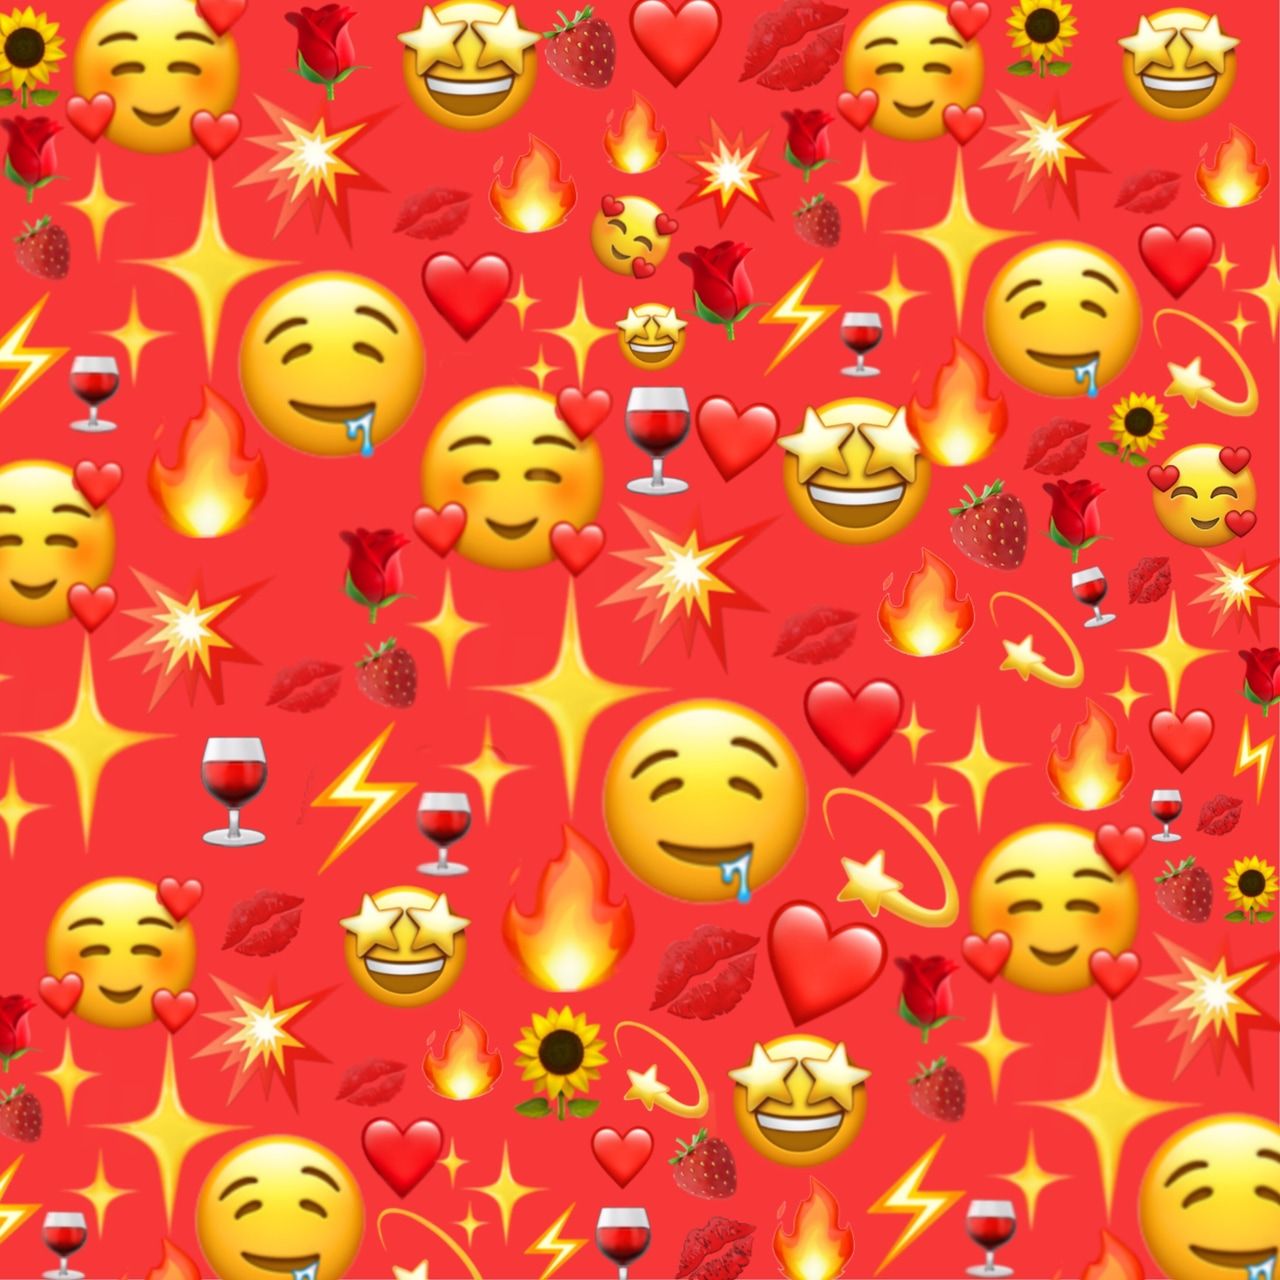 380 image about Emojis